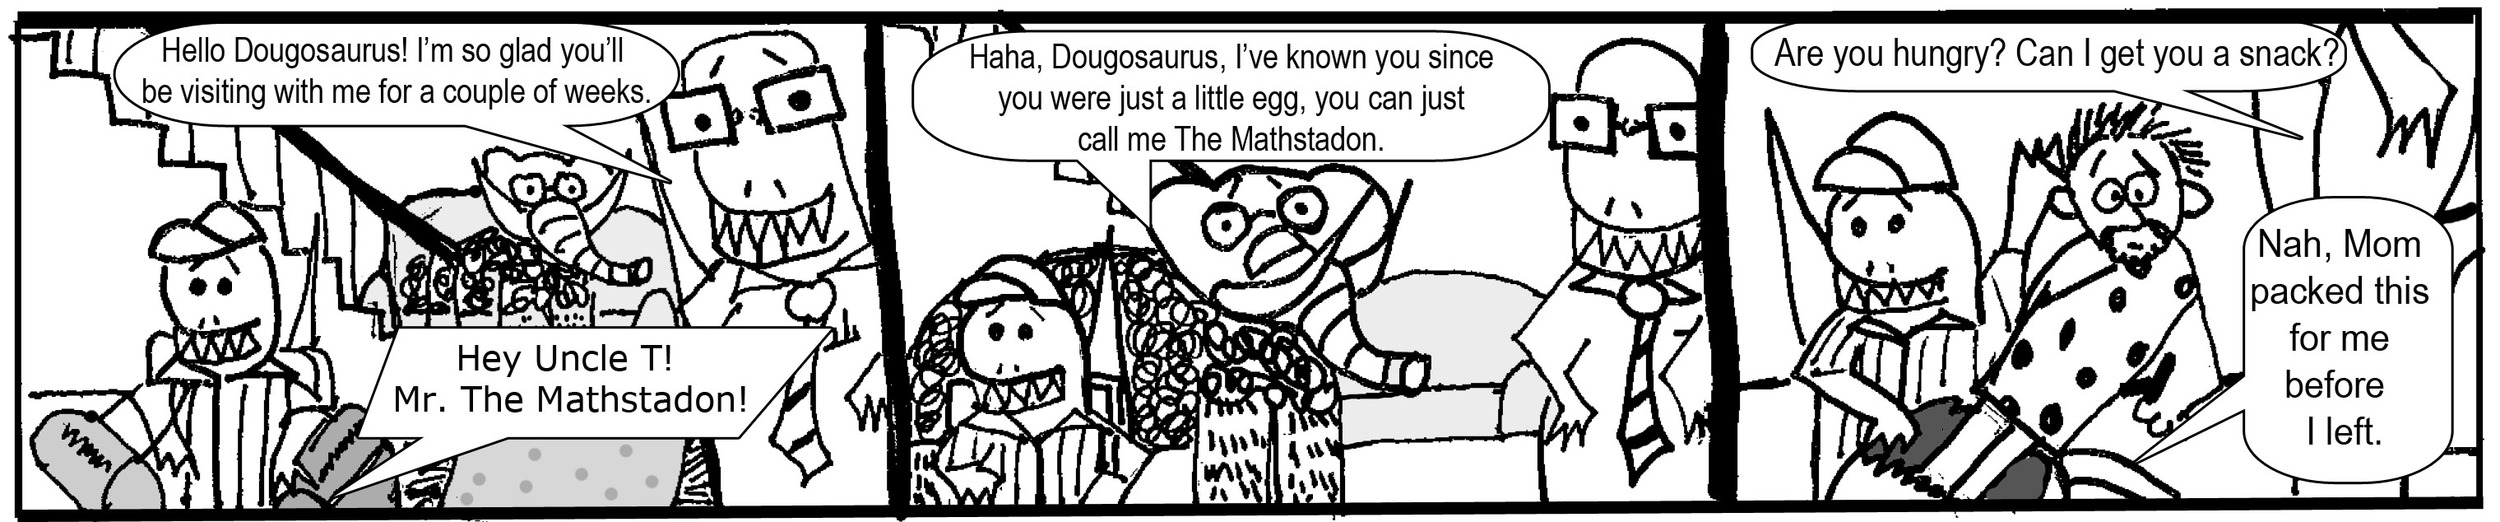 Week 27: Dougosaurus